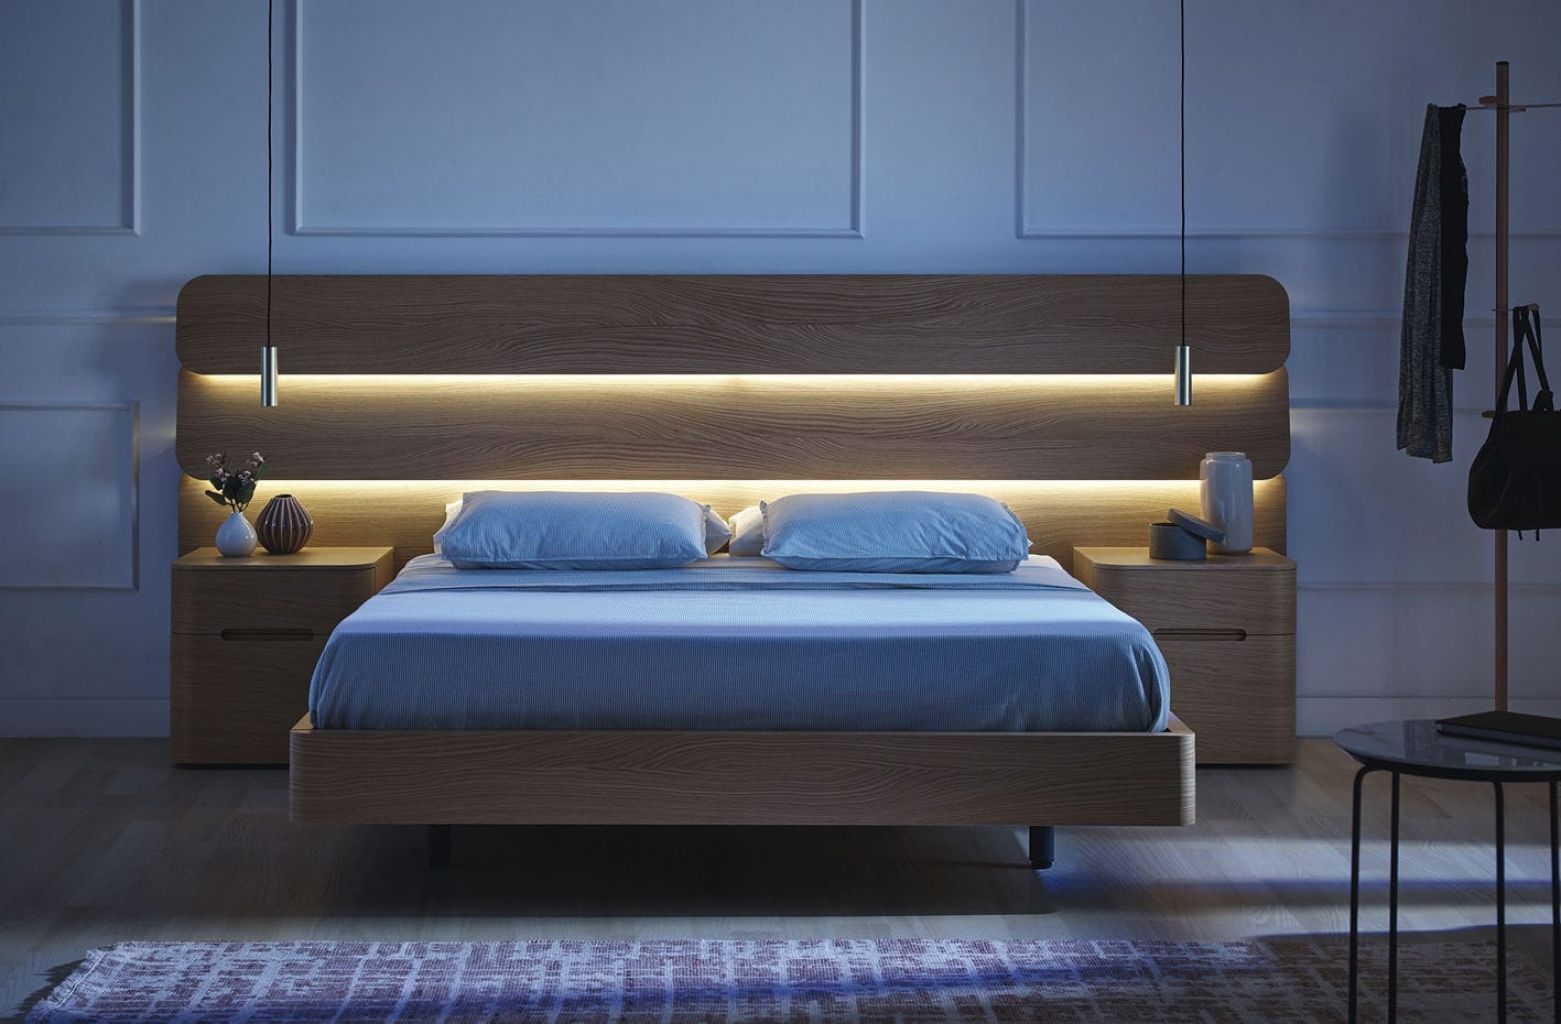 Top 20 mẫu giường ngủ hiện đại đẹp nhất đa dạng phong cách